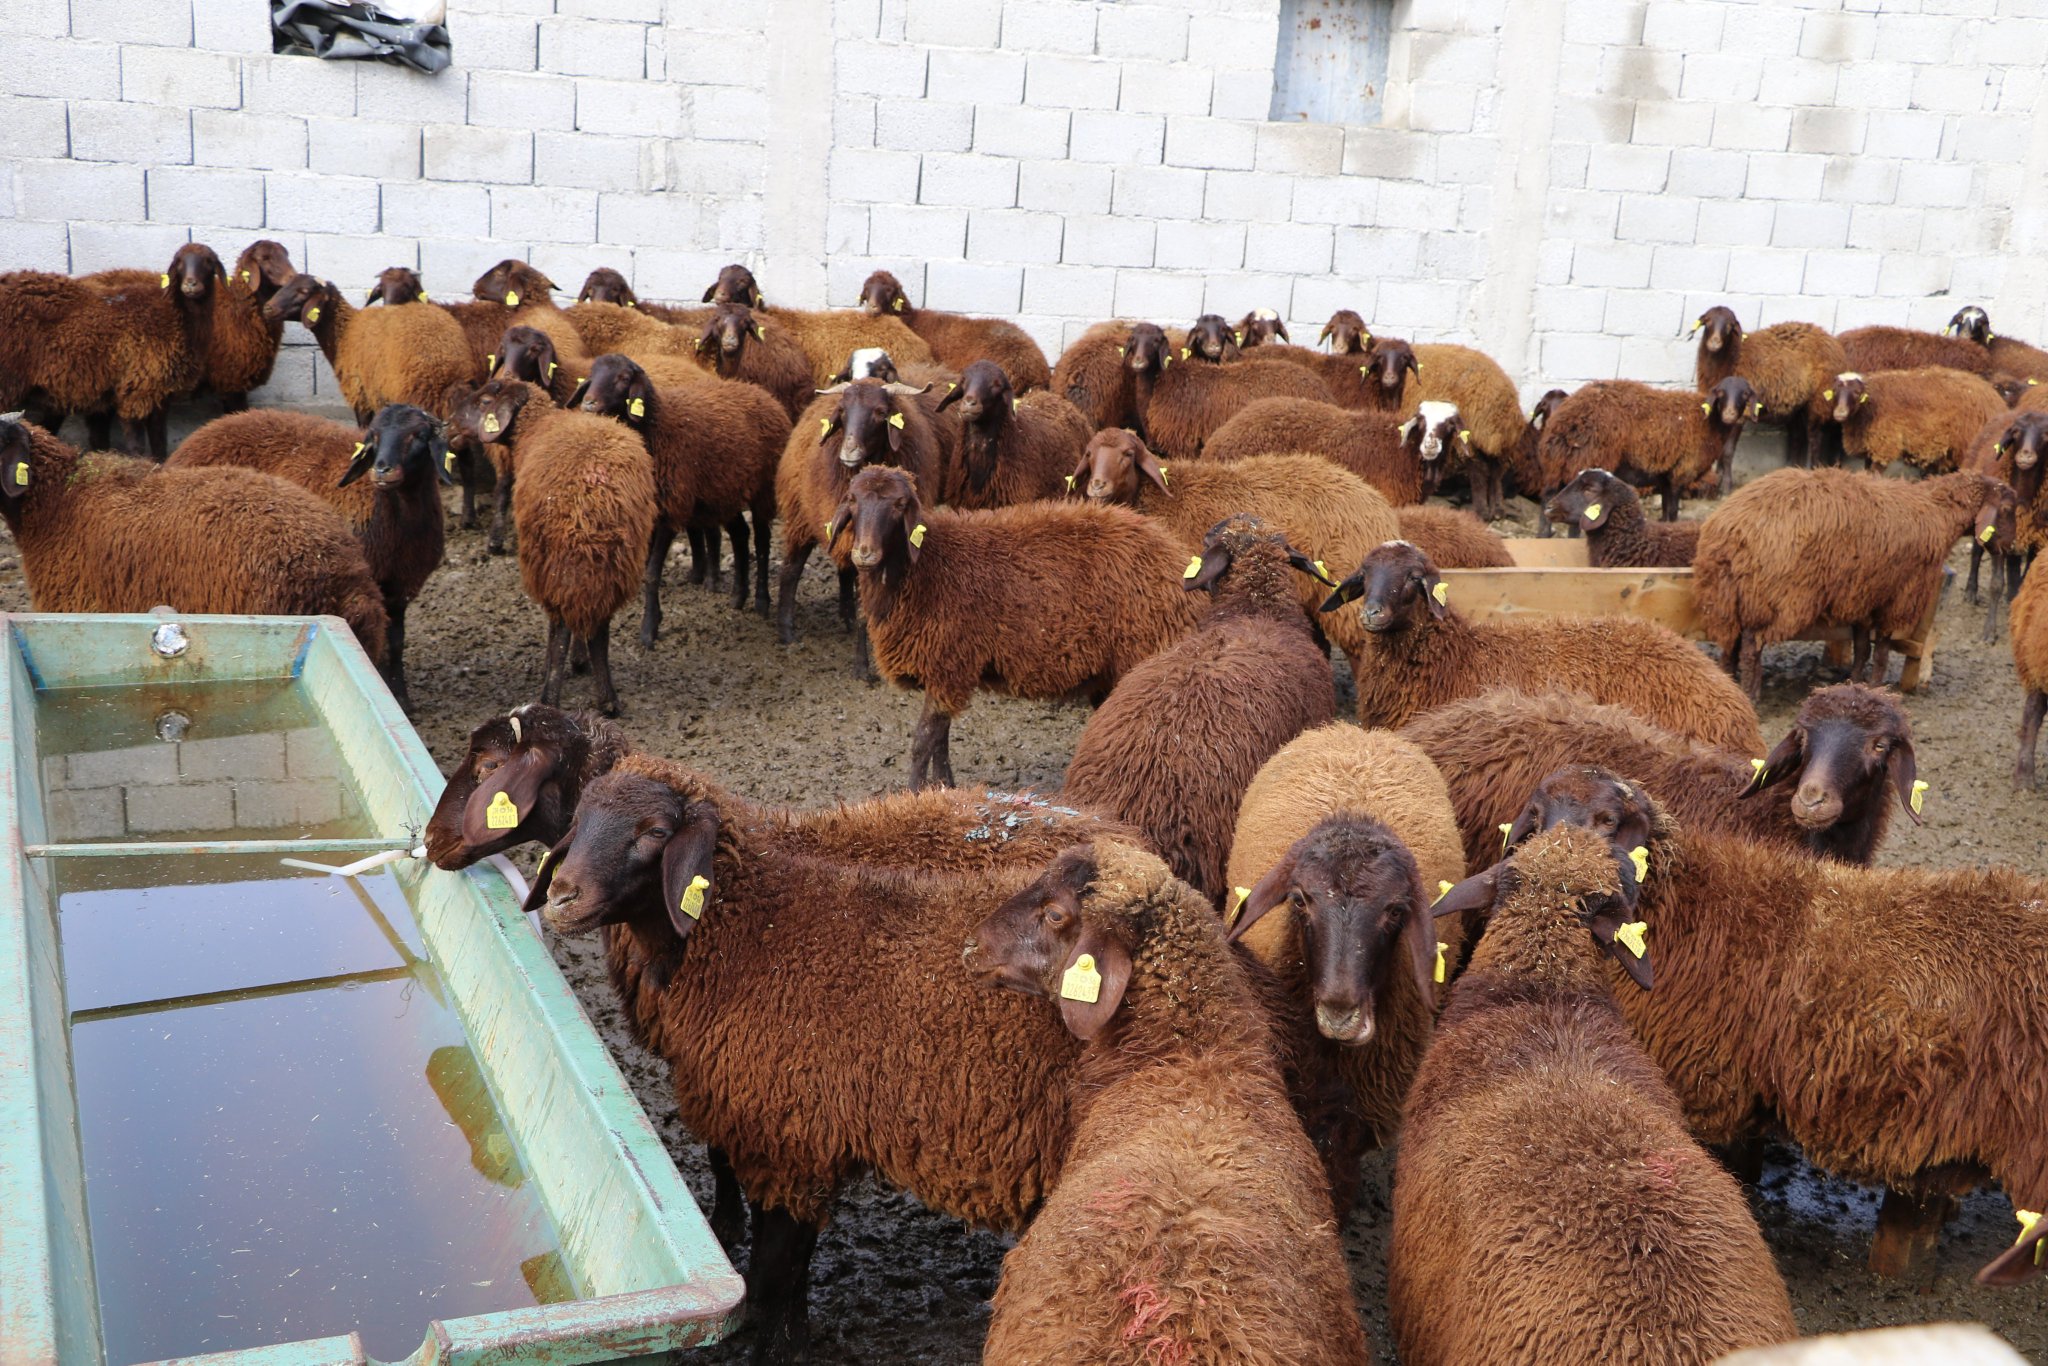 Ağrı’da 5 Yılda 750 bin Koyun Projesi ile Koyun Alımlarına ve Denetimlerine Devam Ediliyor